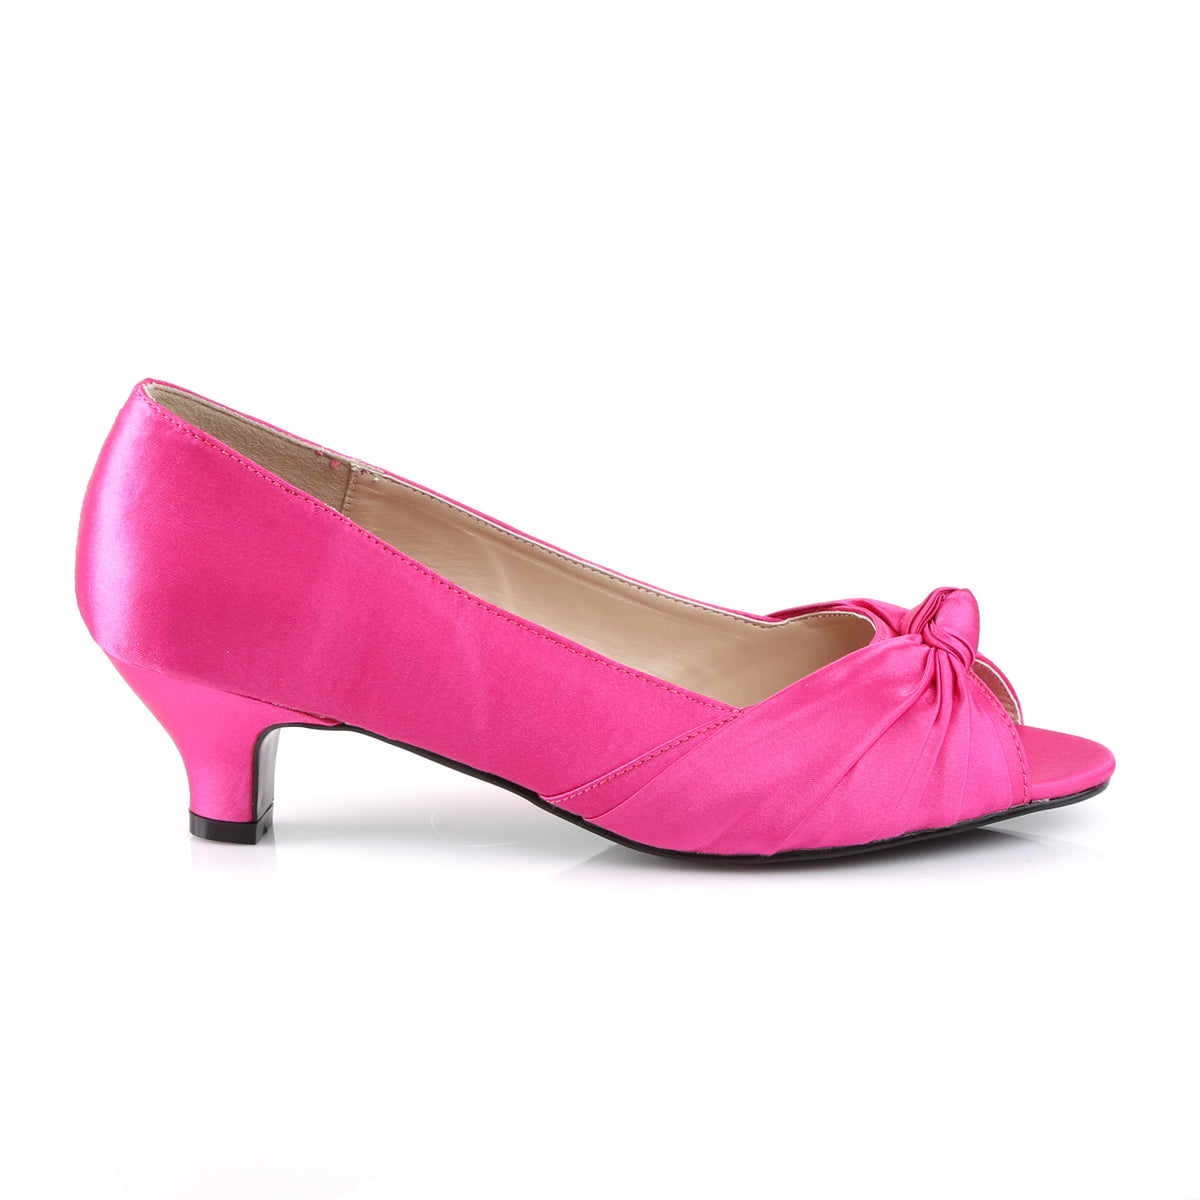 Pleaser Pink Label Pompes pour femmes FAB-422 H. Satin rose